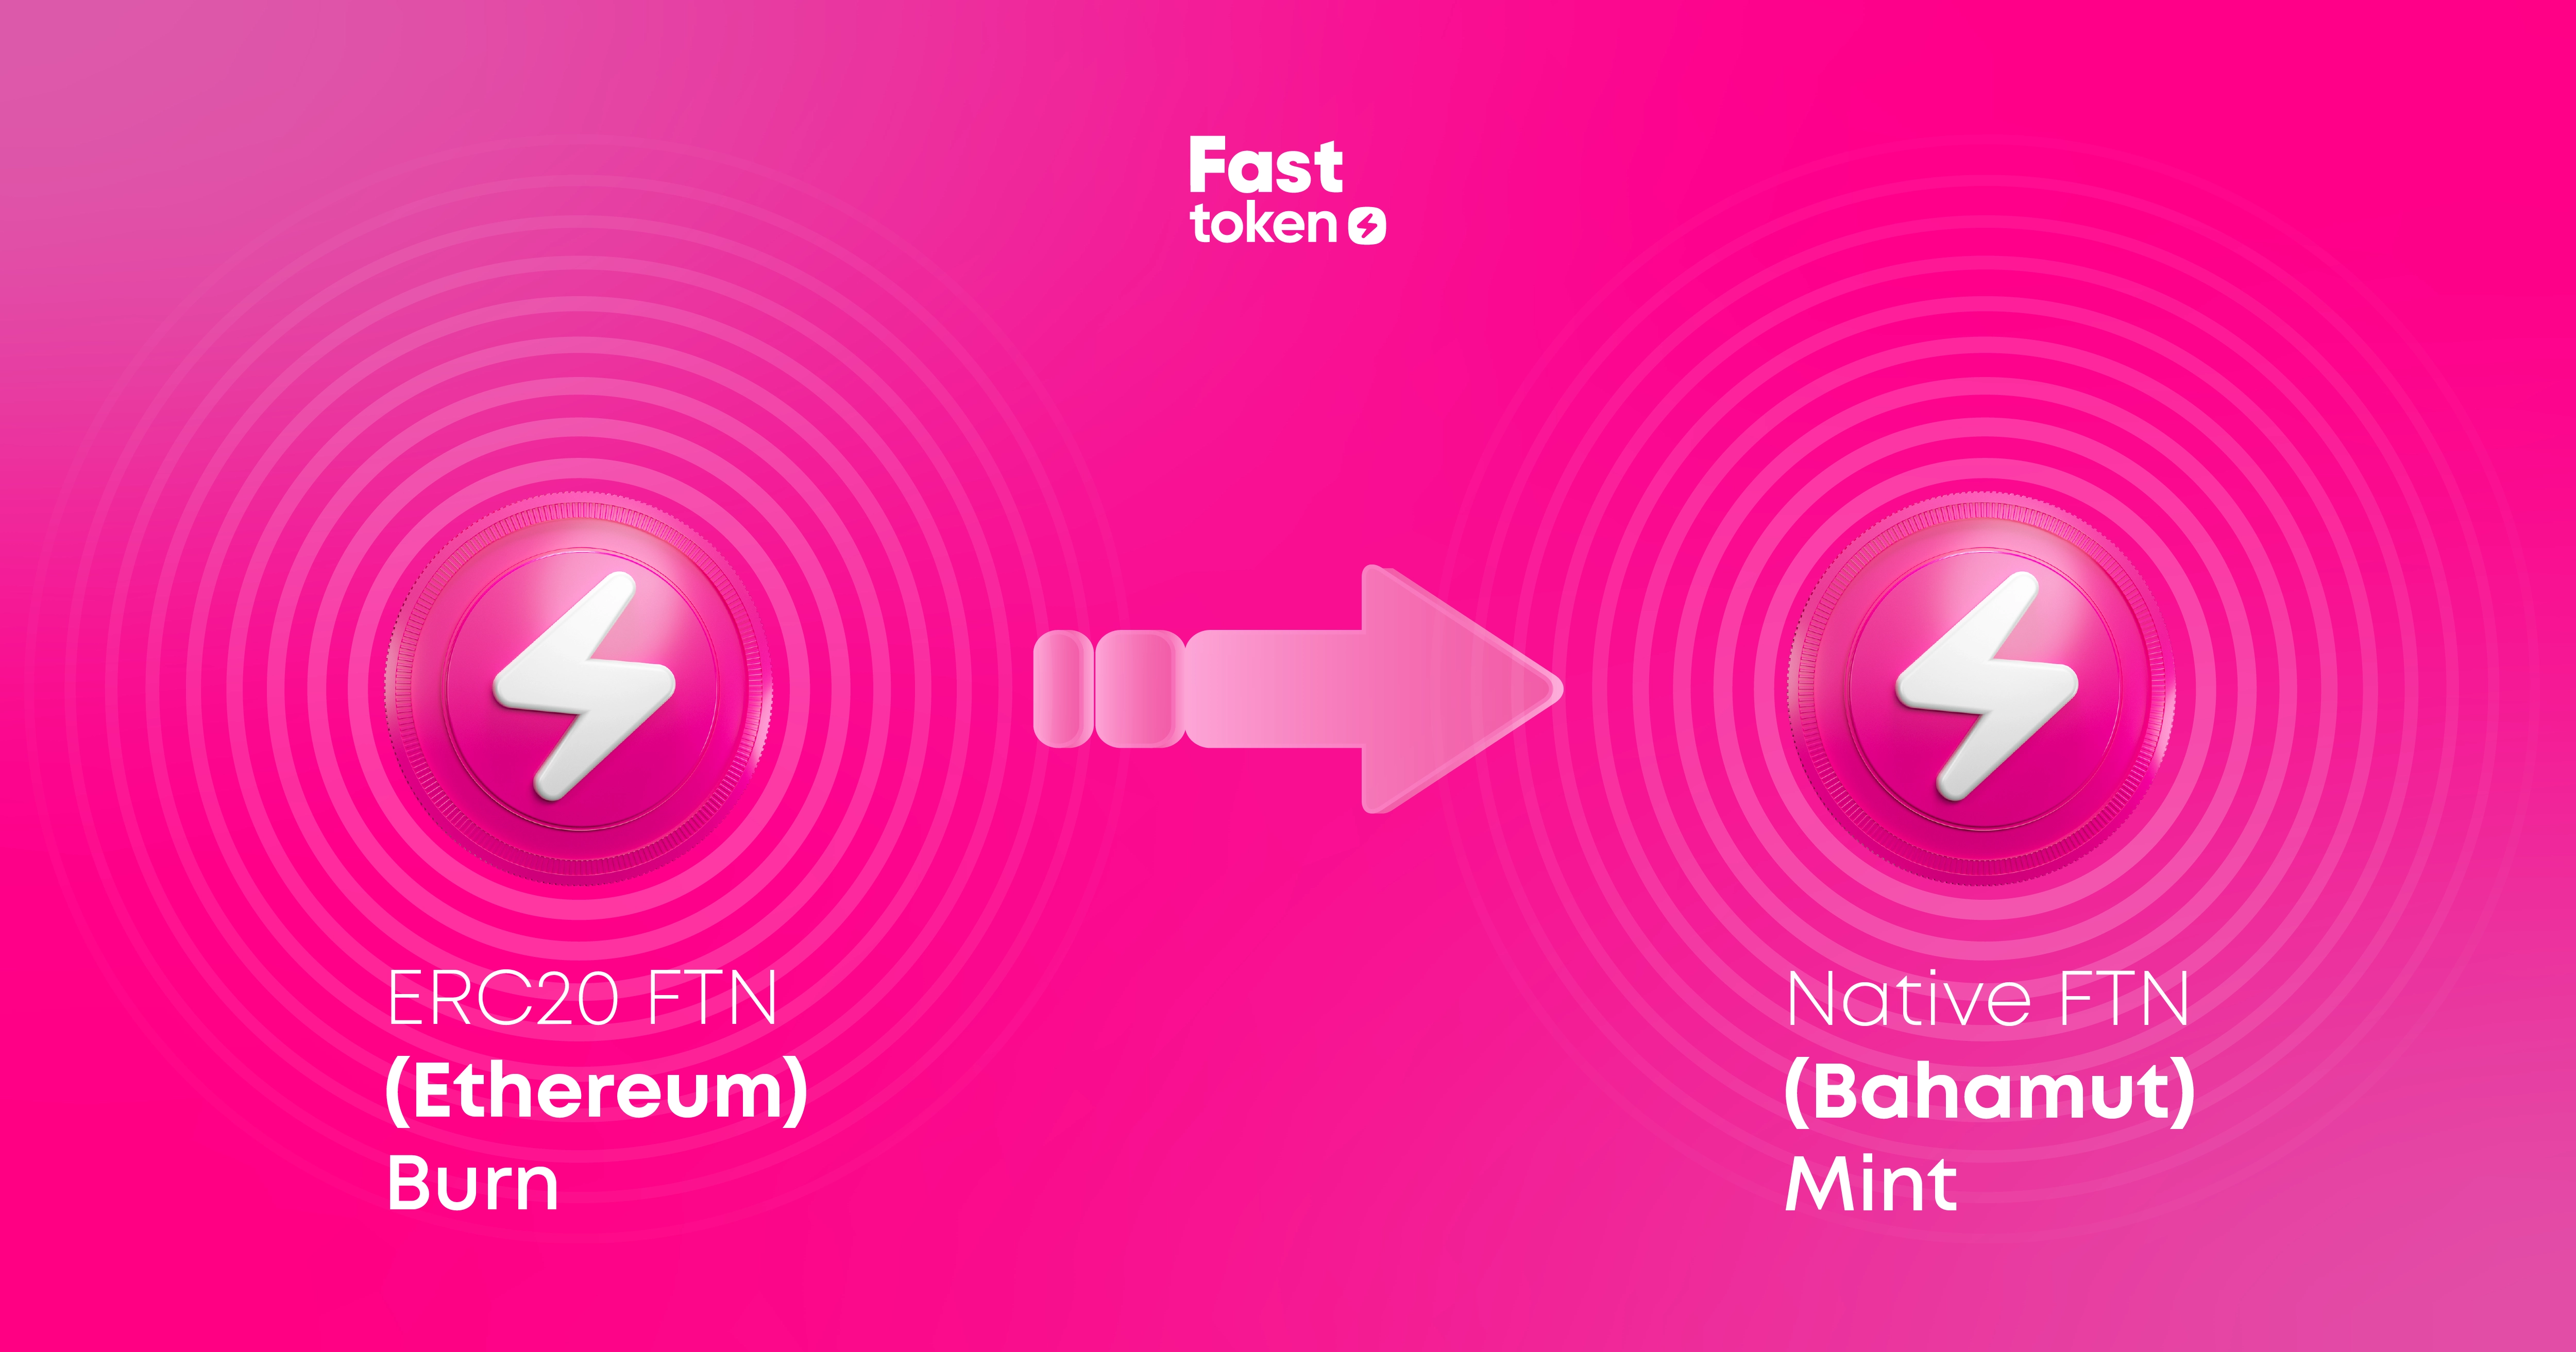 Fastex permet aux propriétaires de Fasttoken (FTN) de transférer leurs jetons de la blockchain Ethereum vers Fastex Chain 